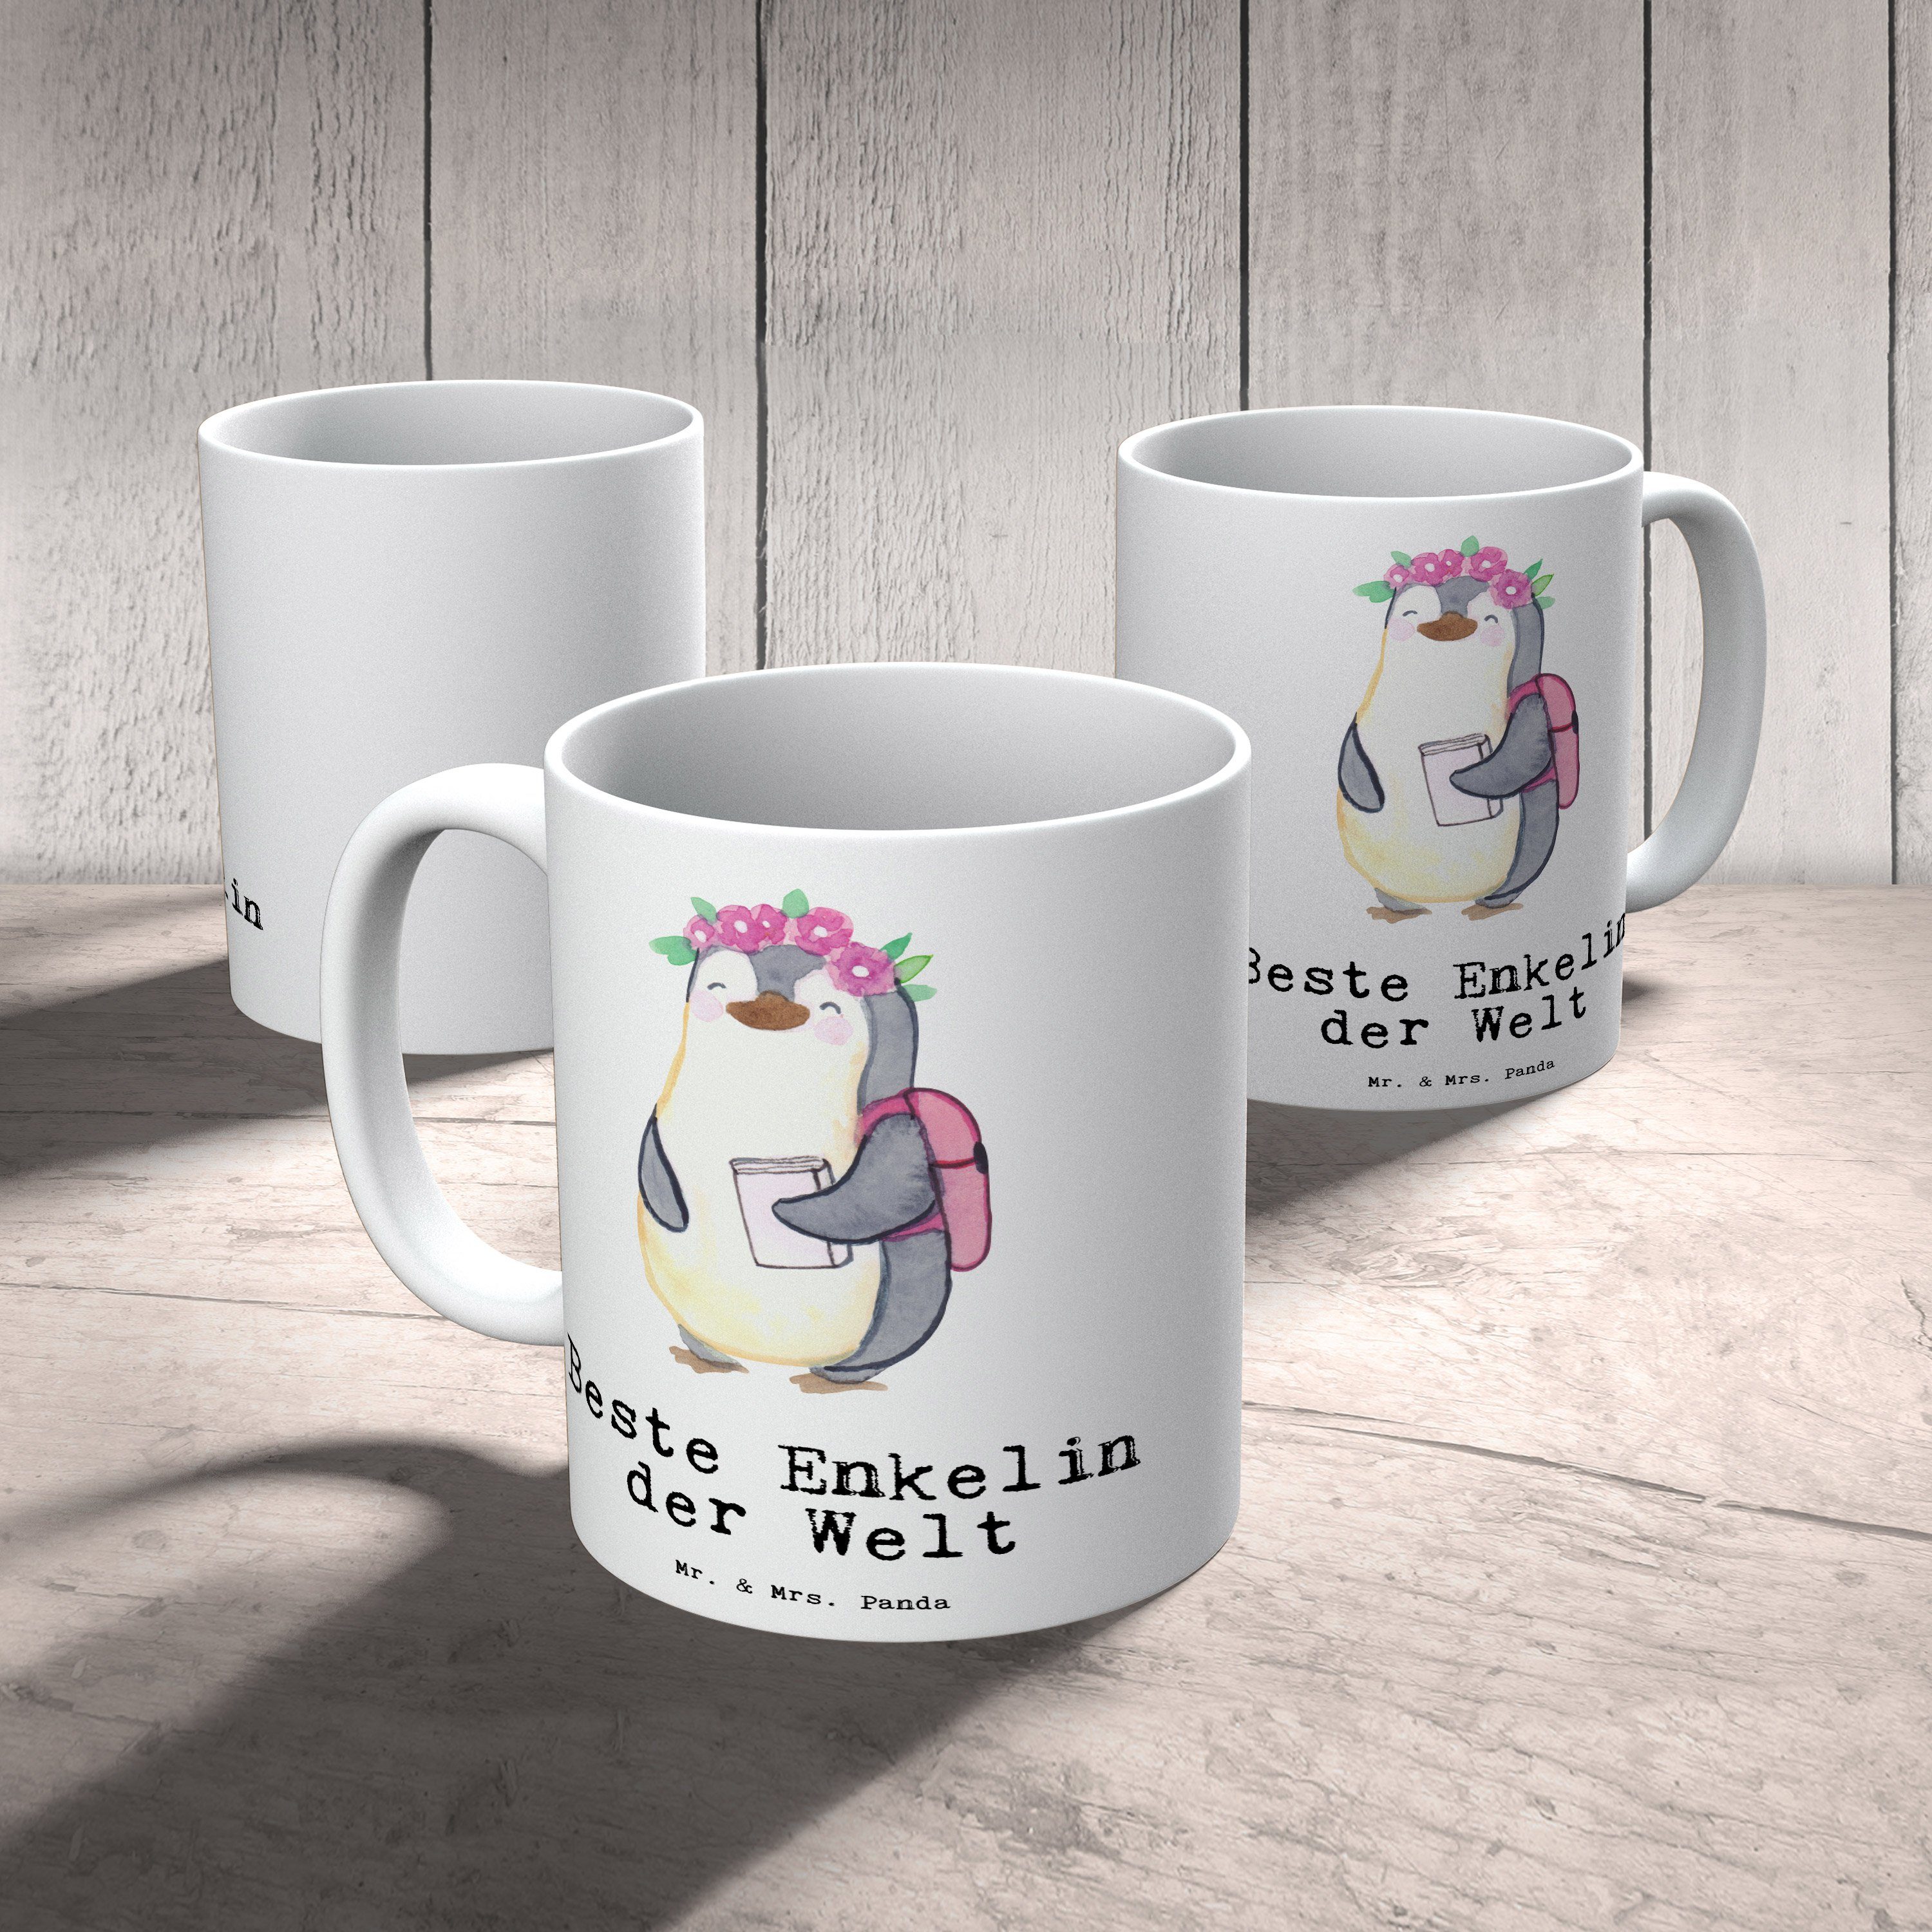 Kaffeetasse, Beste Geburtstag, - Becher, Büro, Bedanken, Kind & Welt Tochter, Geschenk, Pinguin Mr. von Schenken, Tee, der Mrs. Panda Enkelin Keramik Tasse Kaffeebecher, Weiß -